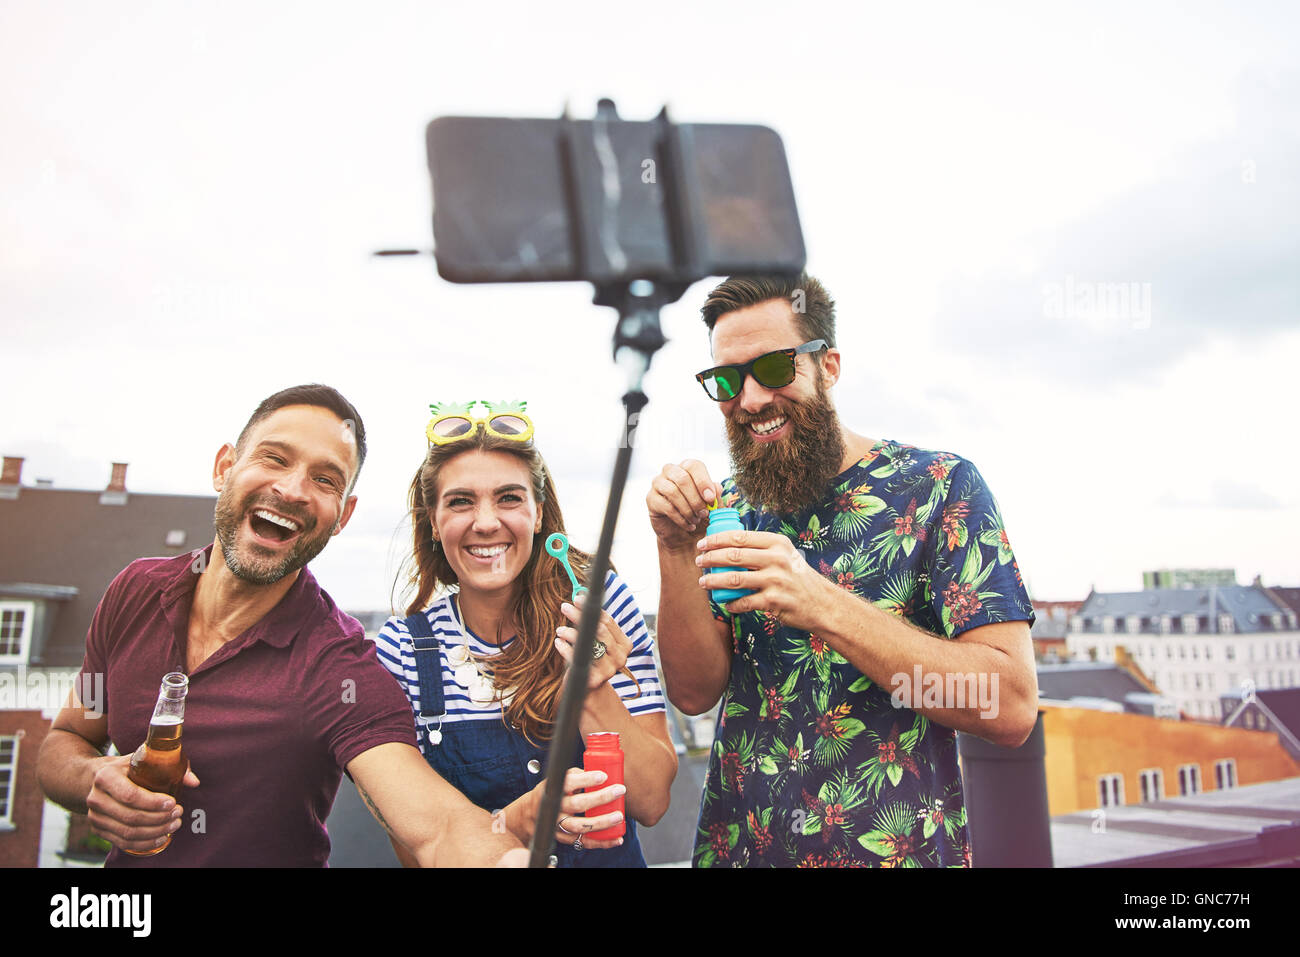 Drei feiern junge erwachsene Freunde im Sommer Bekleidung, die Bilder von sich selbst auf dem Dach beim Biertrinken und blasen Bubb Stockfoto